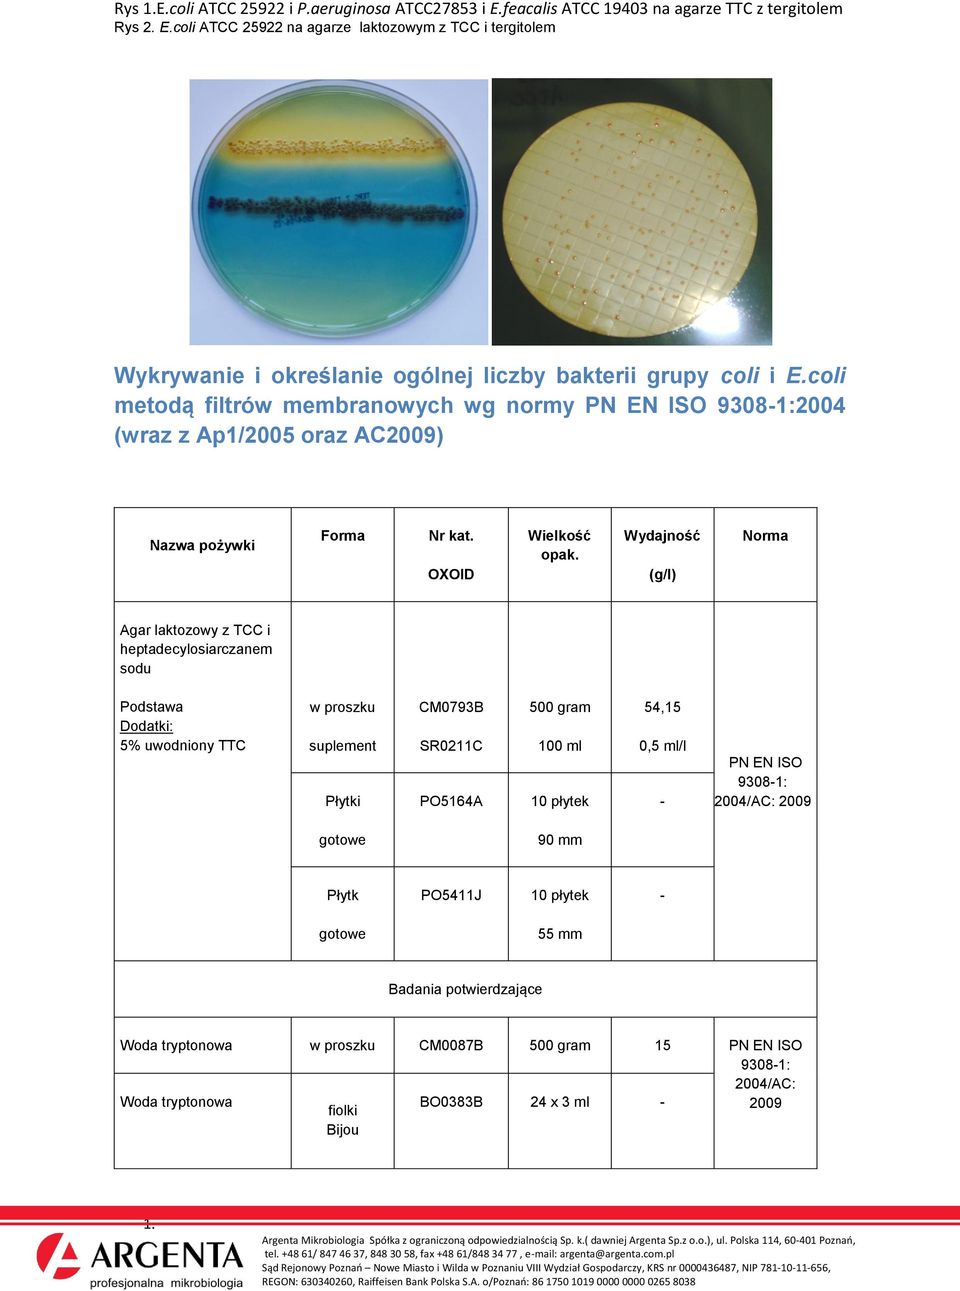 OXOID Wielkość Agar laktozowy z TCC i heptadecylosiarczanem sodu Podstawa Dodatki: 5% uwodniony TTC suplement Płytki CM0793B SR0211C PO5164A 100 ml 10 płytek 54,15 0,5 ml/l - PN EN ISO 9308-1: